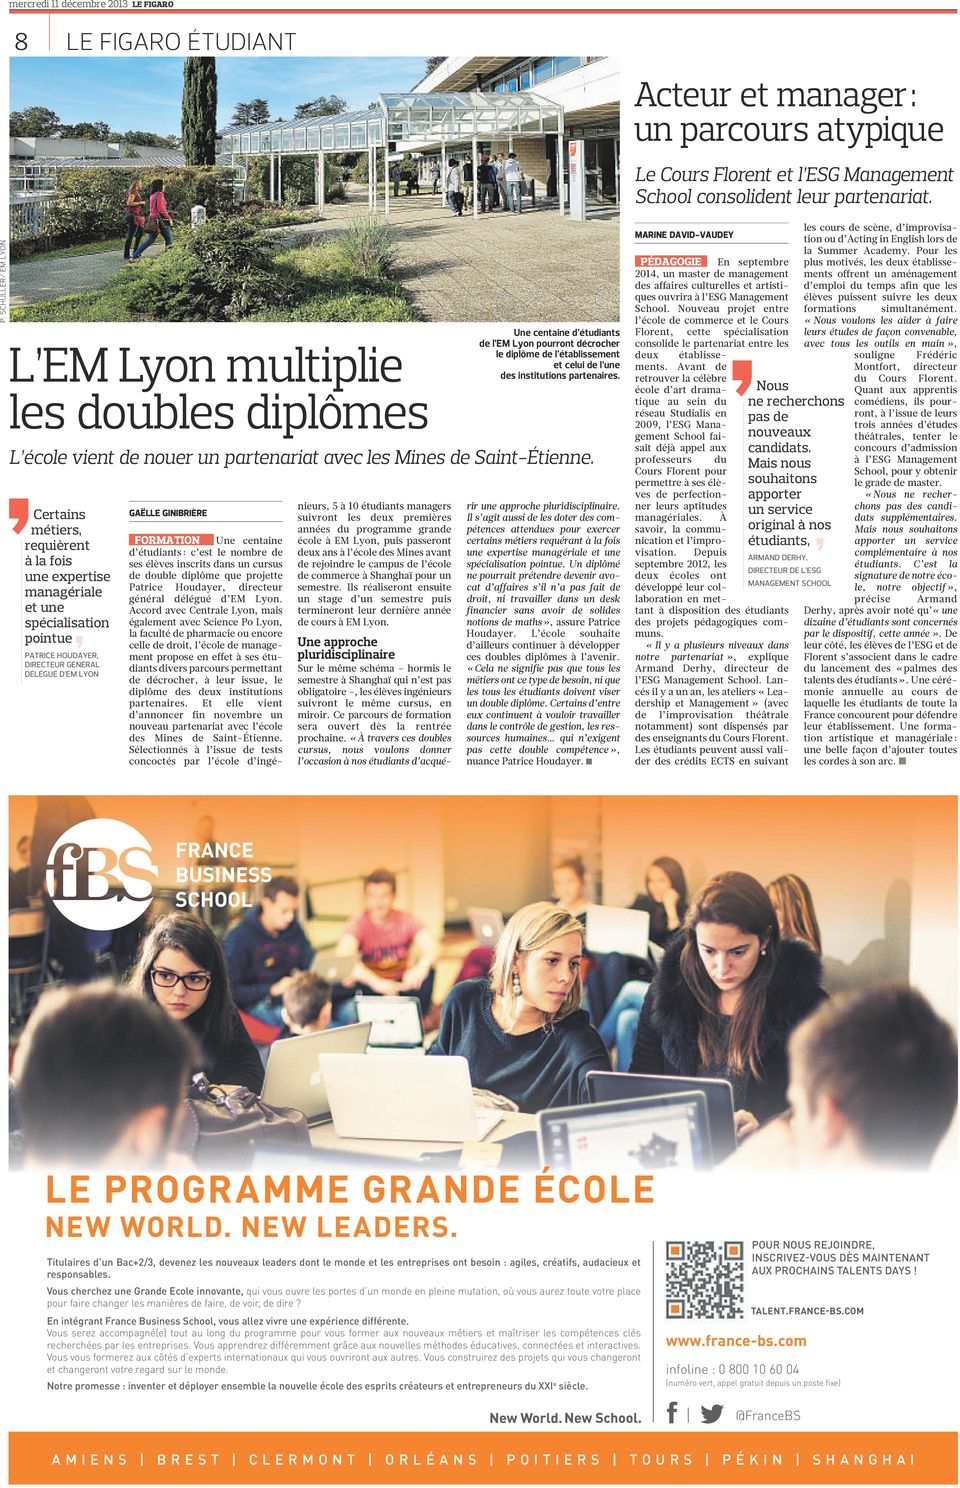 institutions partenaires. L école vient de nouer un partenariat avec les Mines de Saint-Étienne.